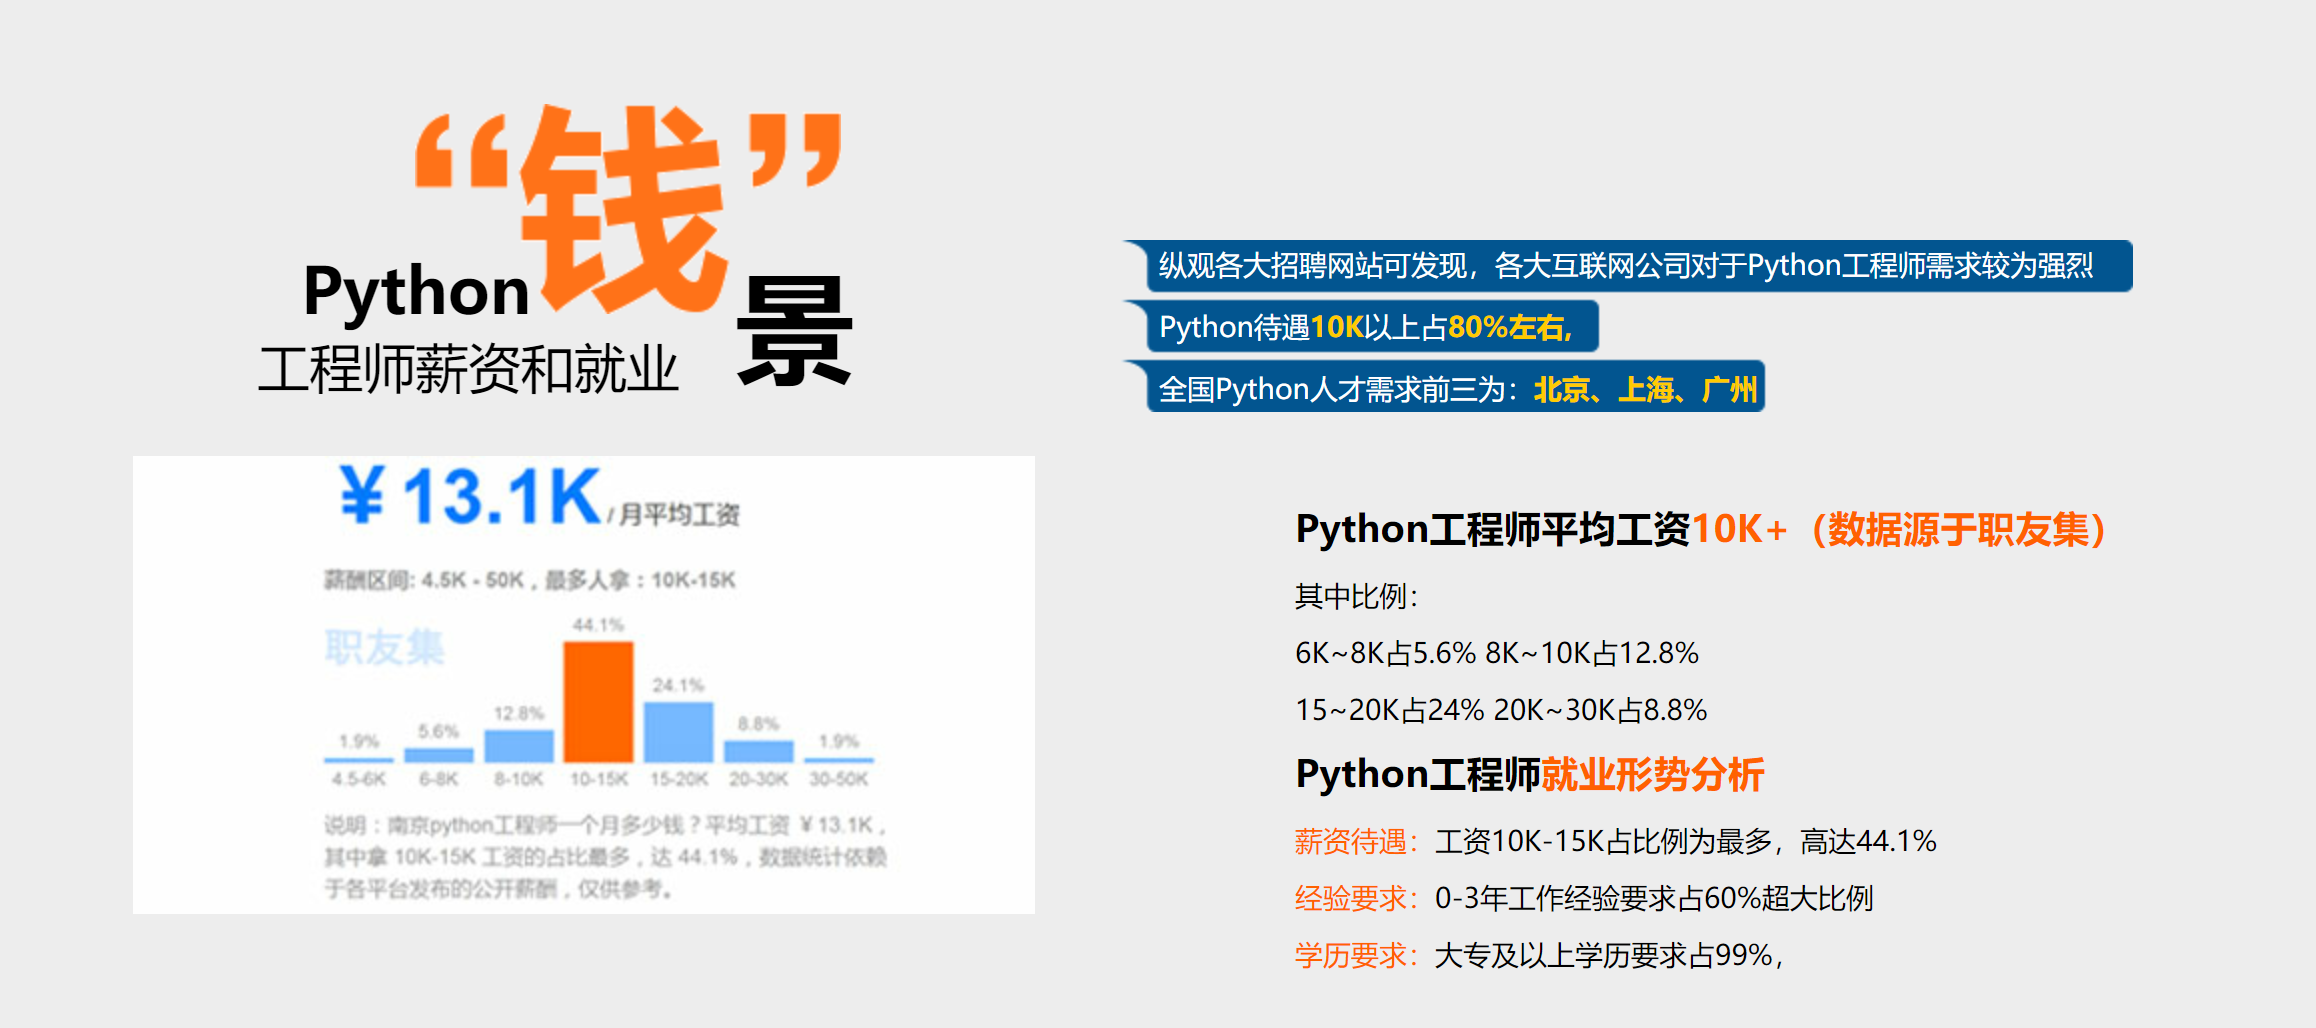 南京Python人工智能培训课程